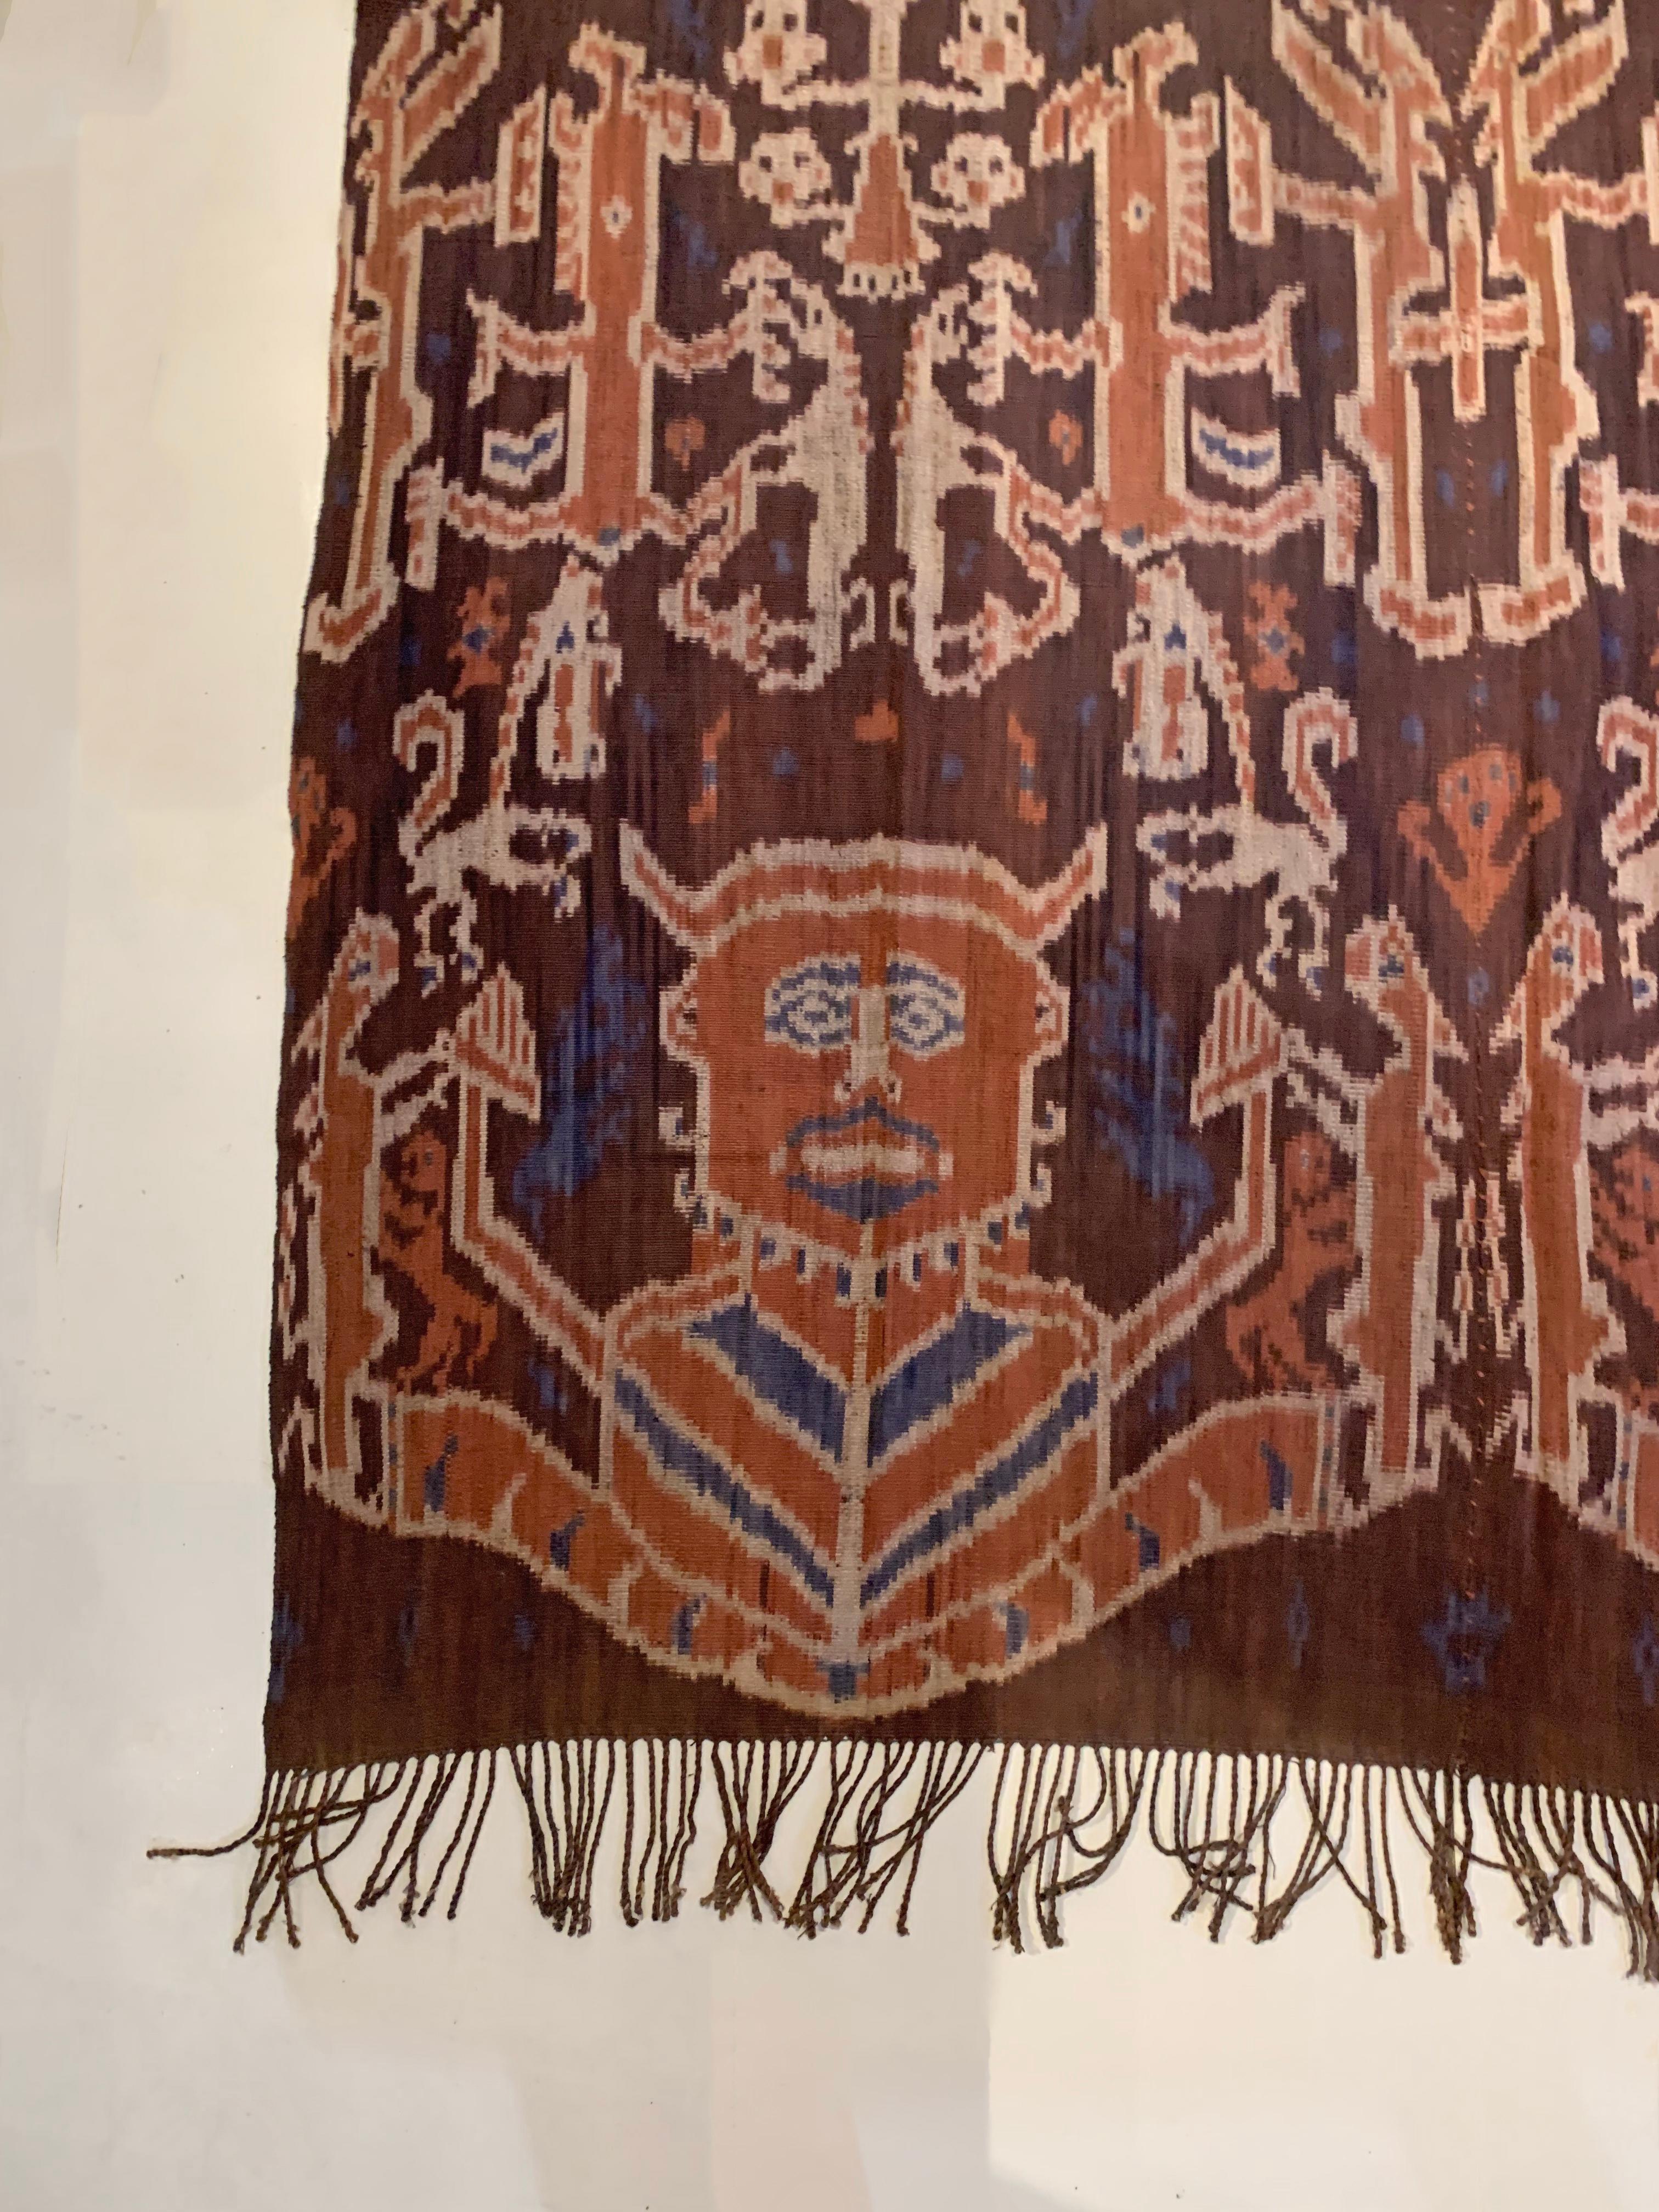 Dieses Ikat-Textil stammt von der Insel Sumba in Indonesien. Es wird mit natürlich gefärbten Garnen nach einer seit Generationen überlieferten Methode handgewebt. Es zeigt eine atemberaubende Vielfalt von Stammesmustern und -motiven. Es sind die